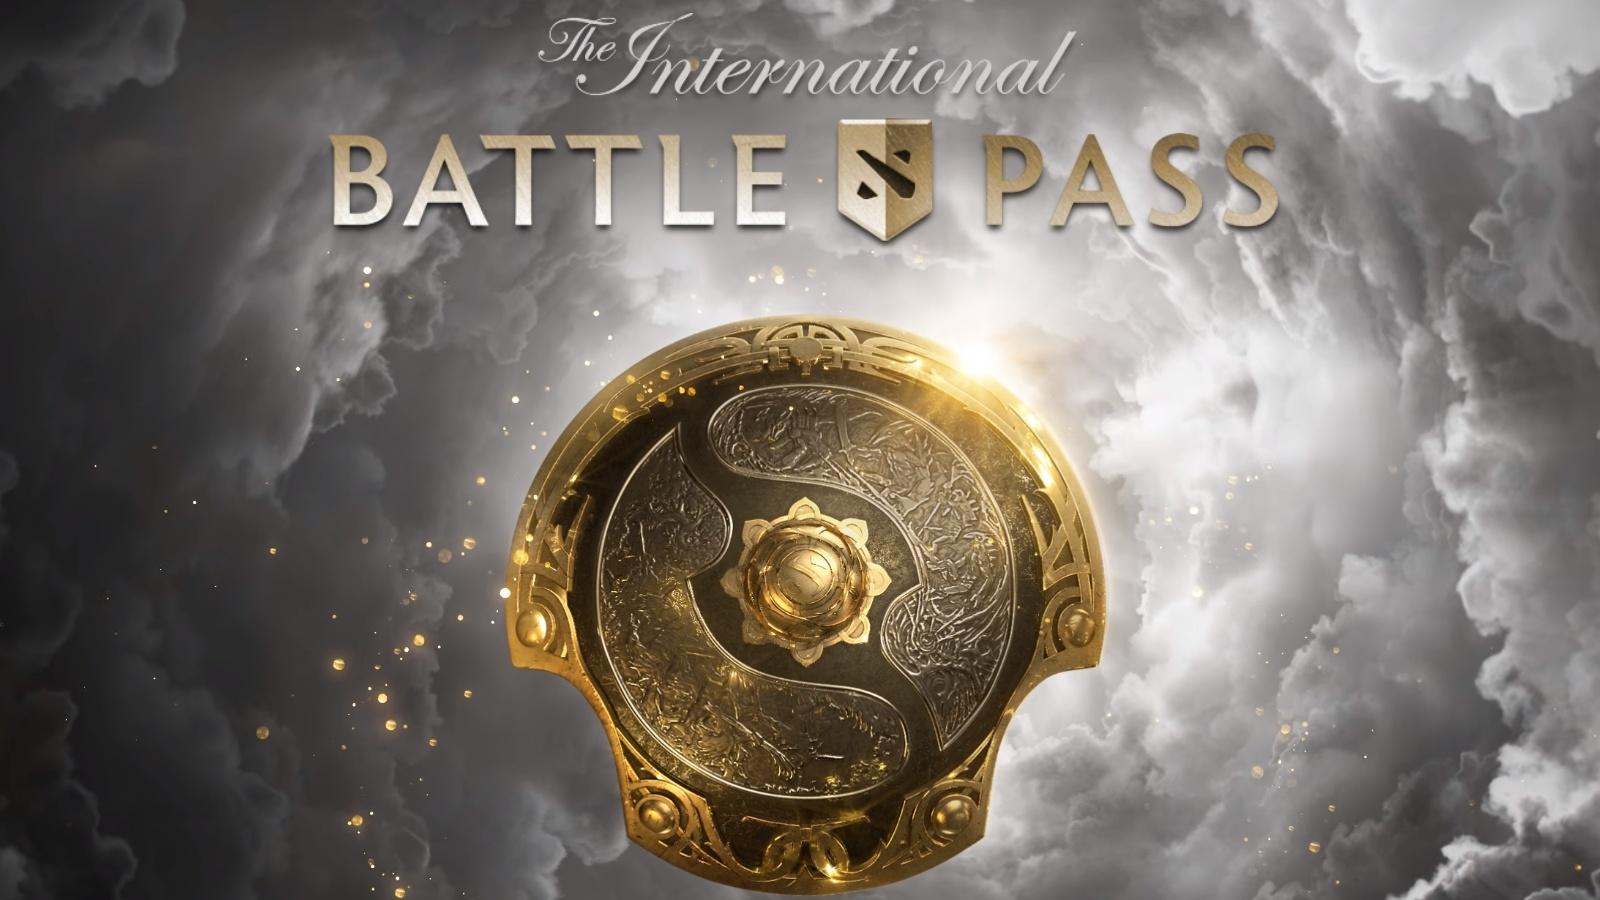 The International Battle Pass